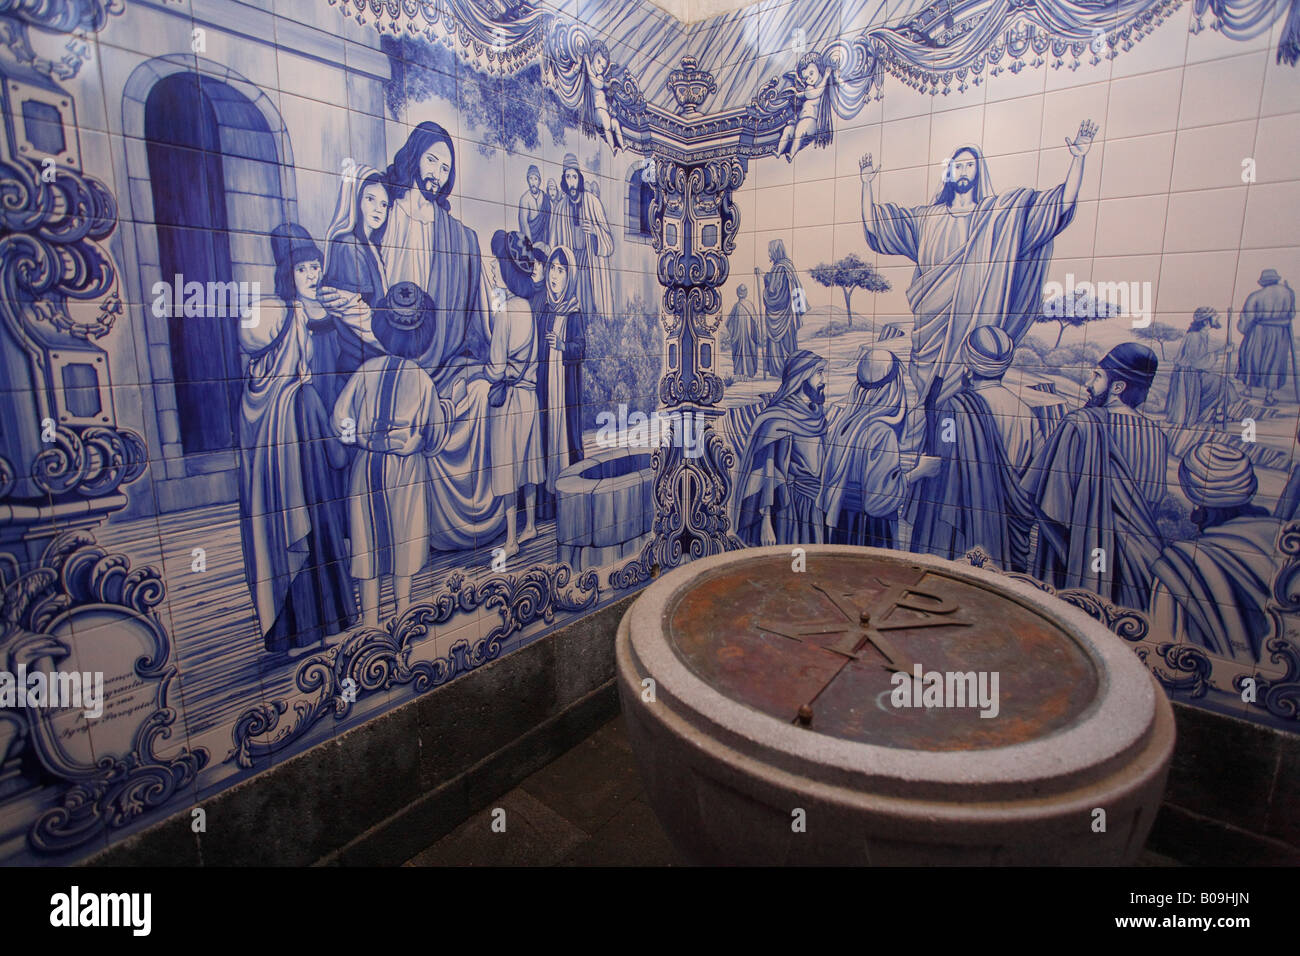 Bord du portugais (tuiles vernissées bleu azulejo) à l'intérieur de l'église de Furnas, île de São Miguel, Açores, Portugal Banque D'Images